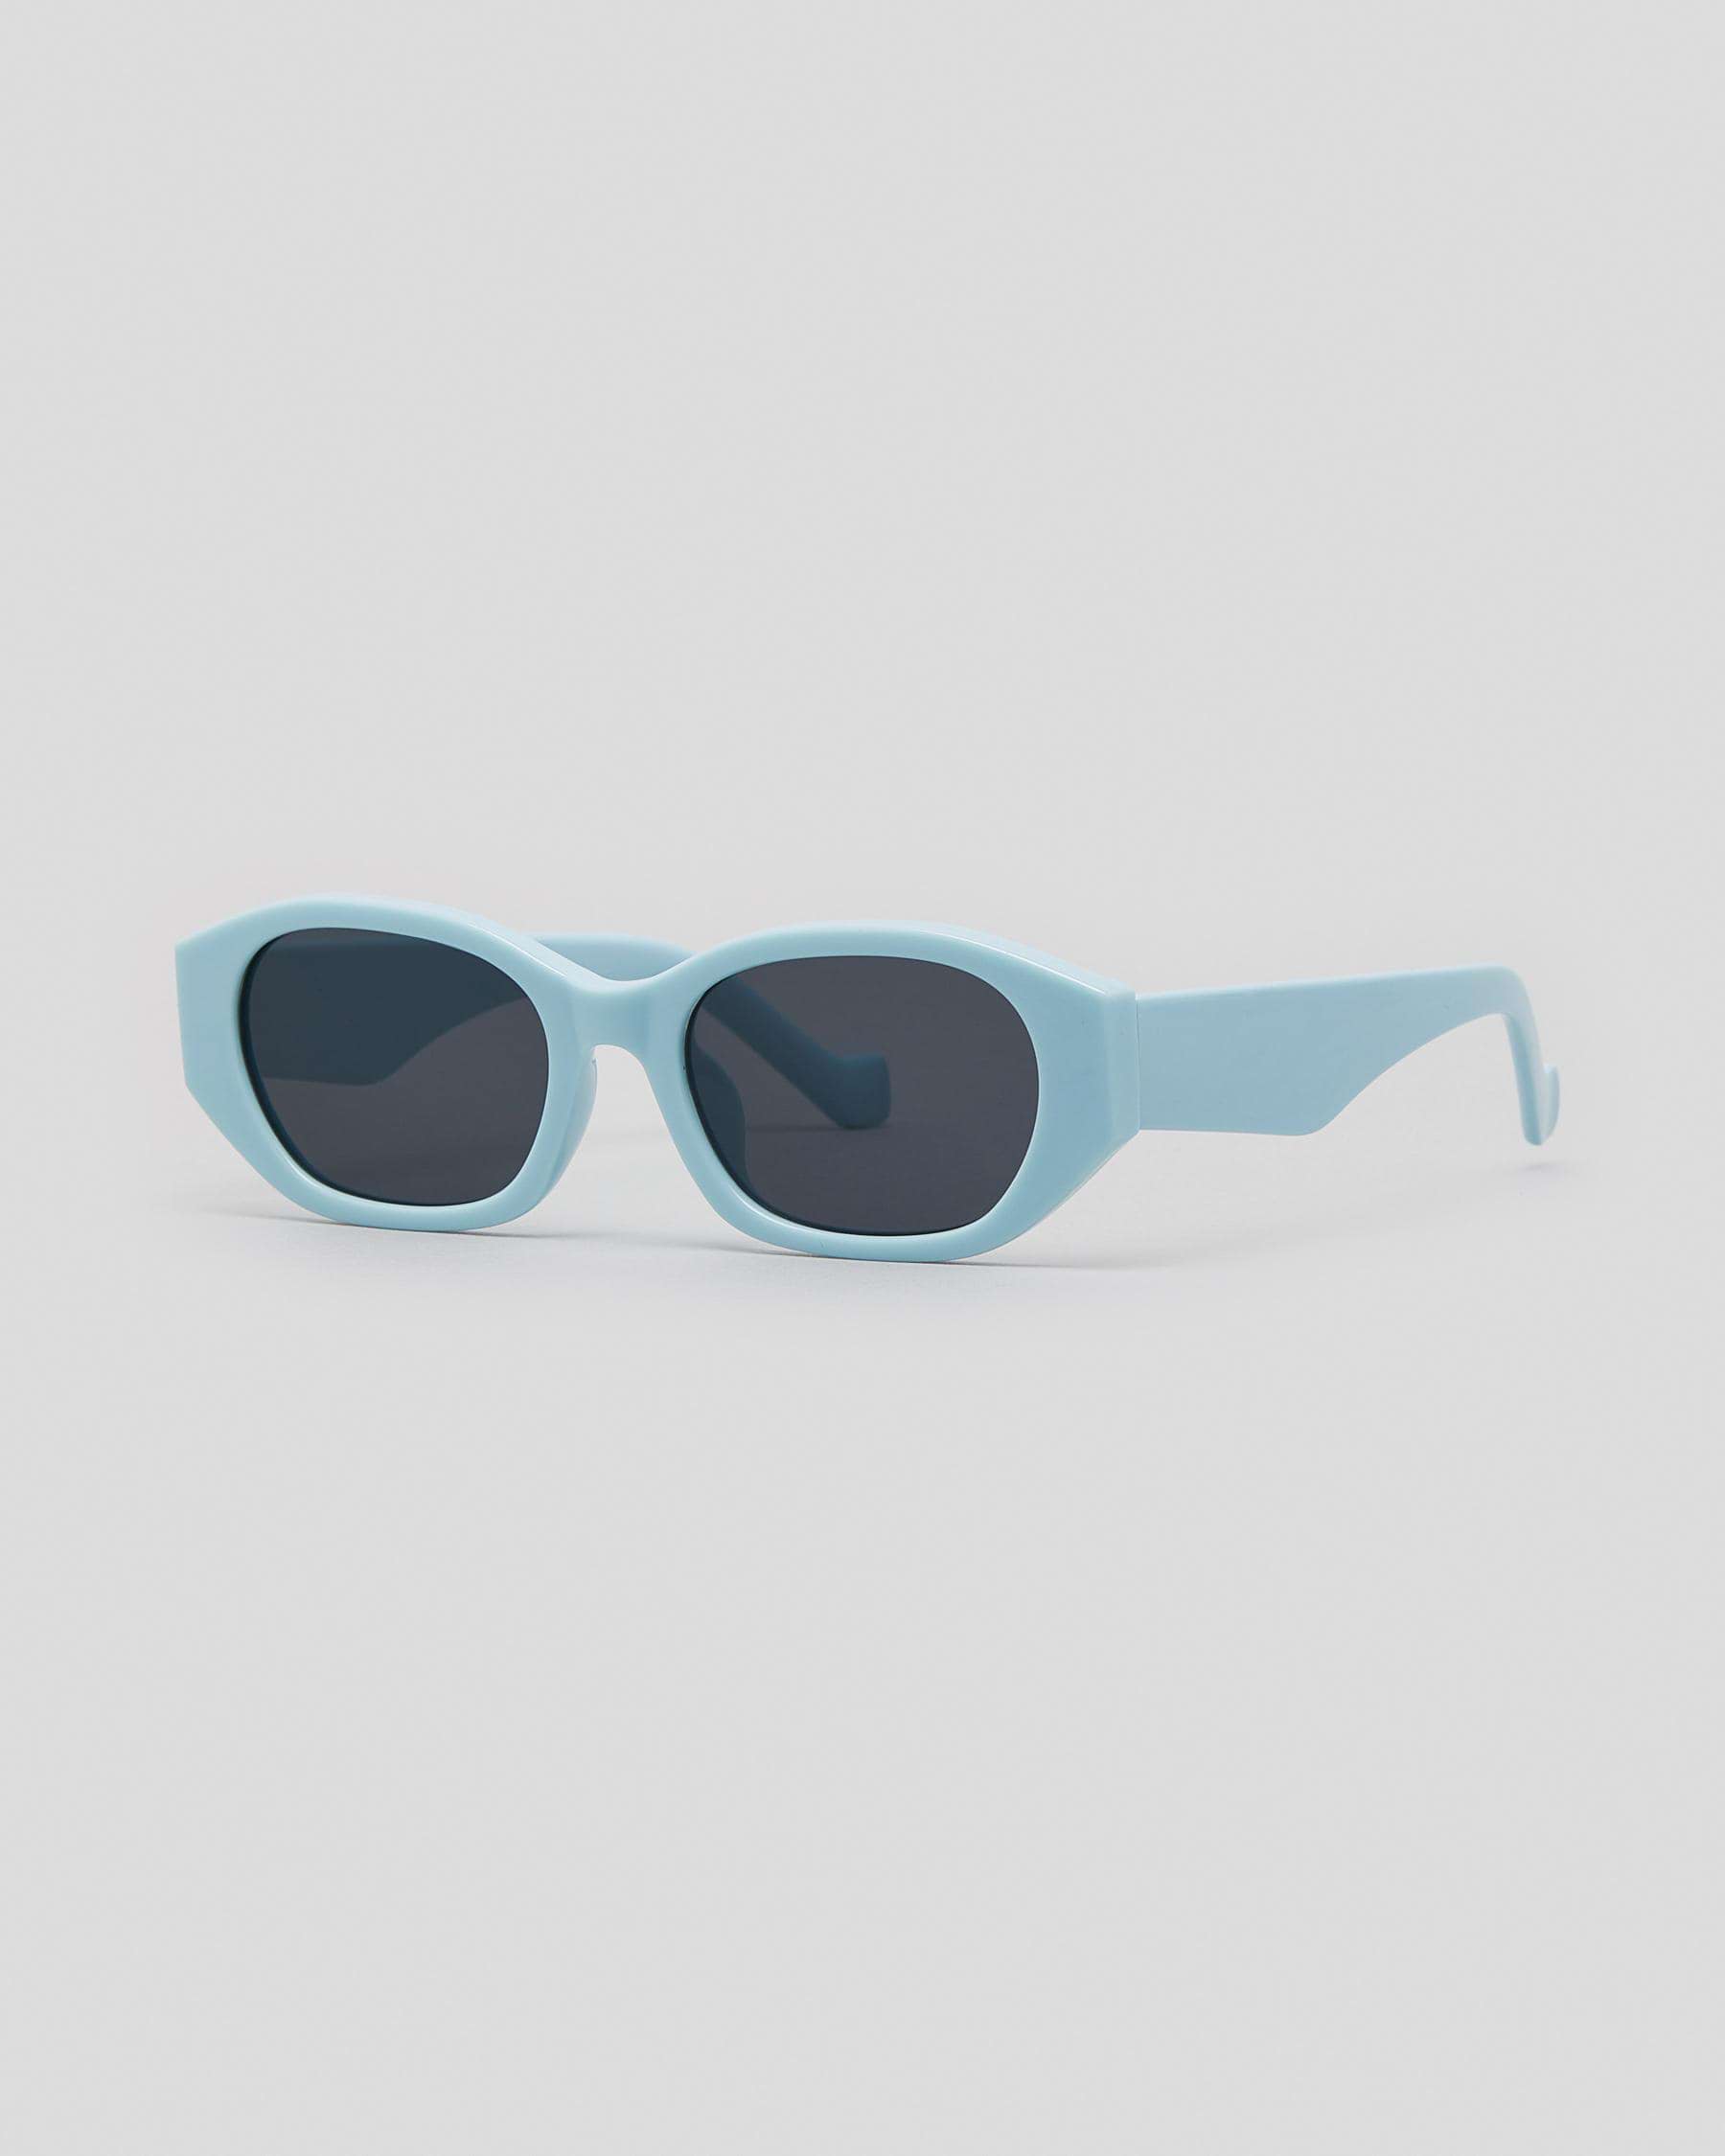 Indie Eyewear Evoke Sunglasses In Light Blue - Fast Shipping & Easy ...